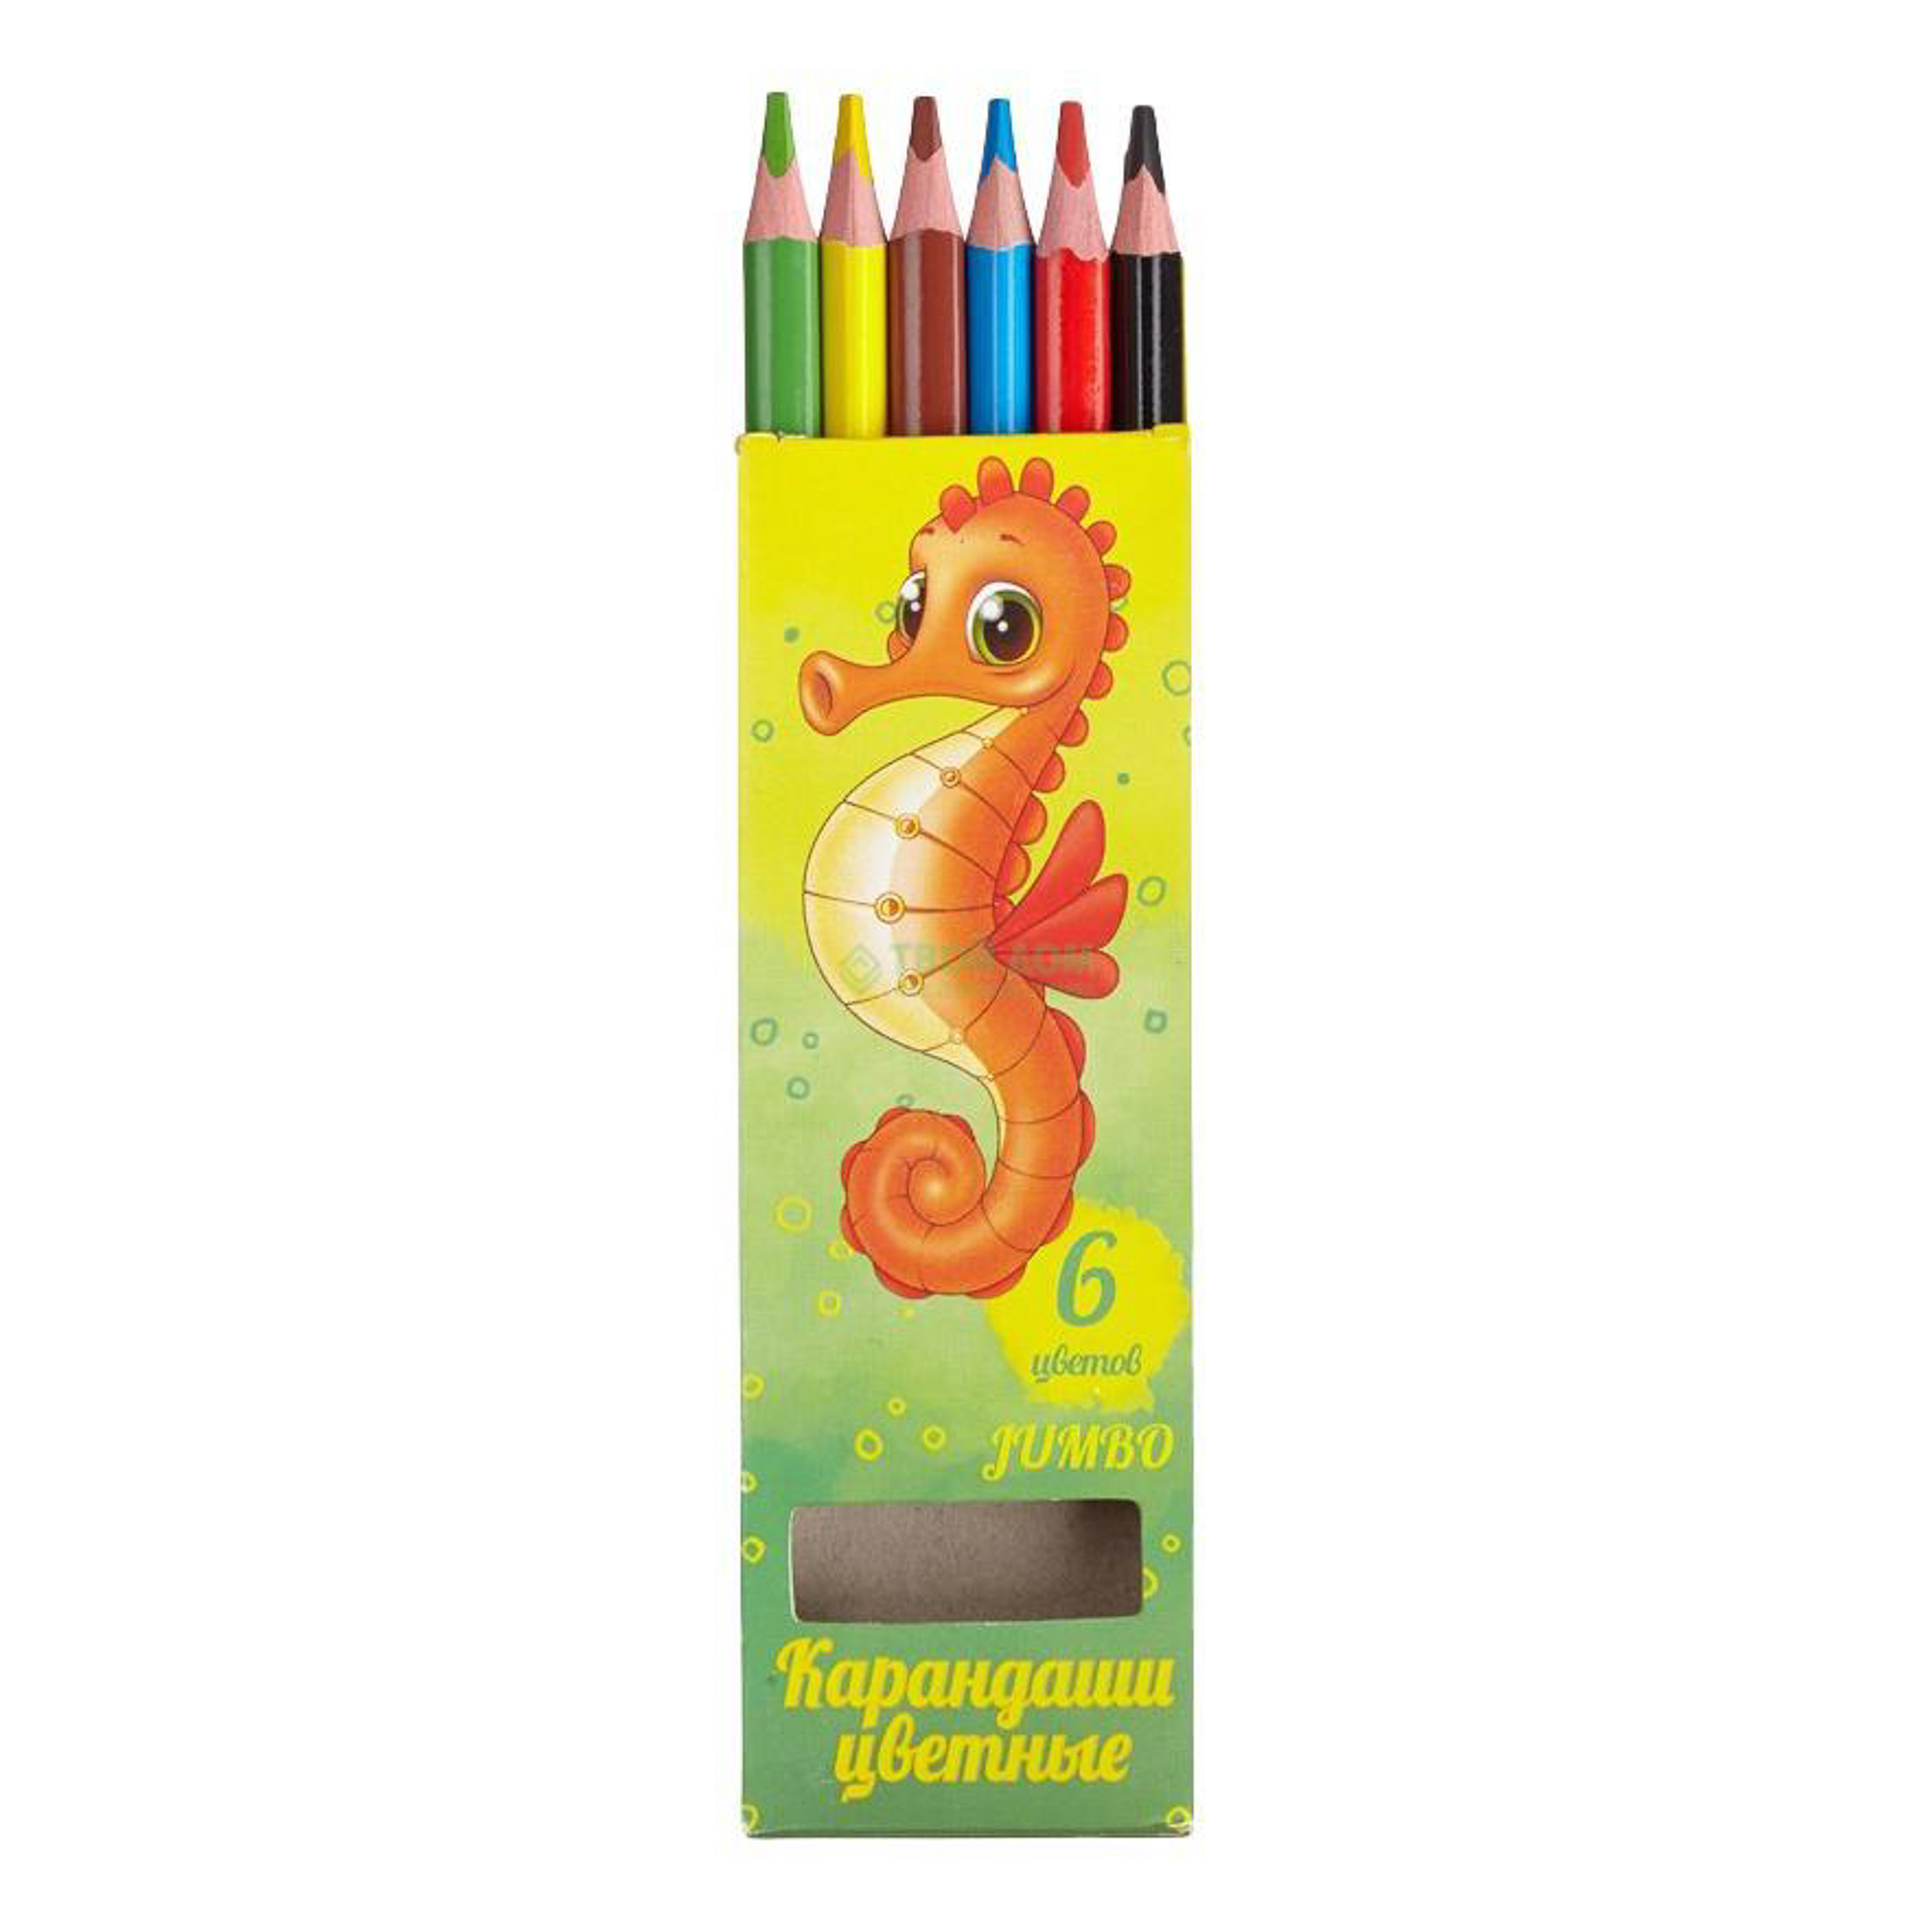 Цветные карандаши 6. Карандаши цветные трехгранные School 1. Набор цветных карандашей 6 цветов. Цветные карандаши в коробке. Коробка с карандашами.